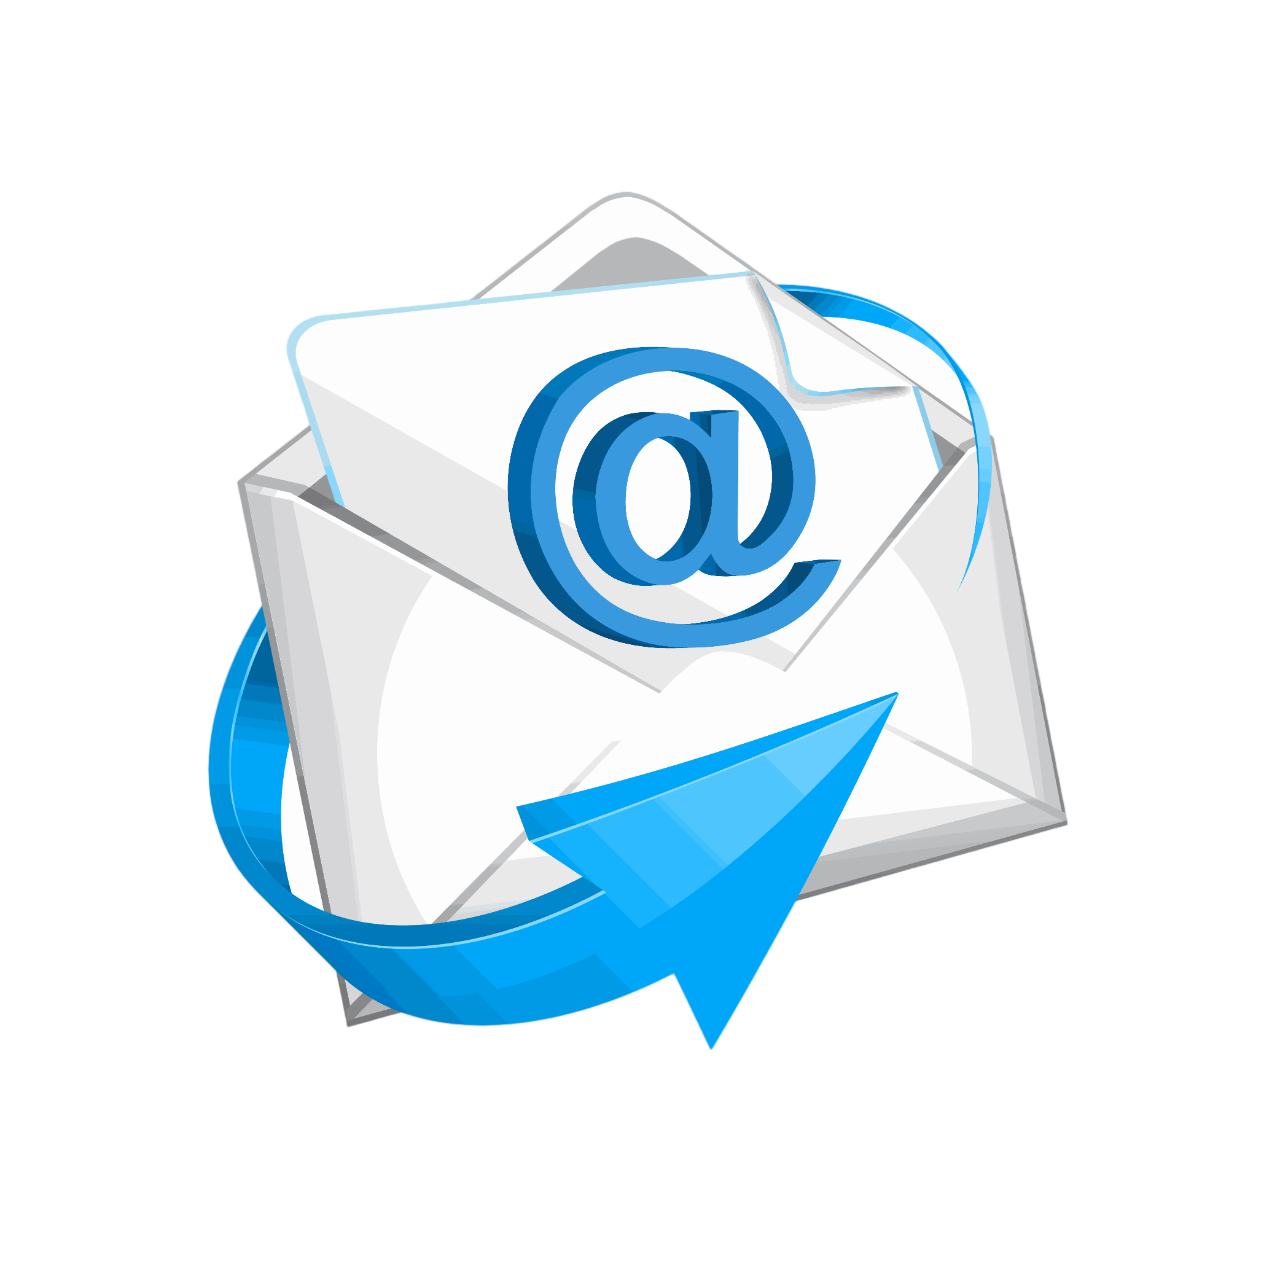 E mail новой. Электронная почта. Электронное письмо. Символ электронной почты. Значок почты.